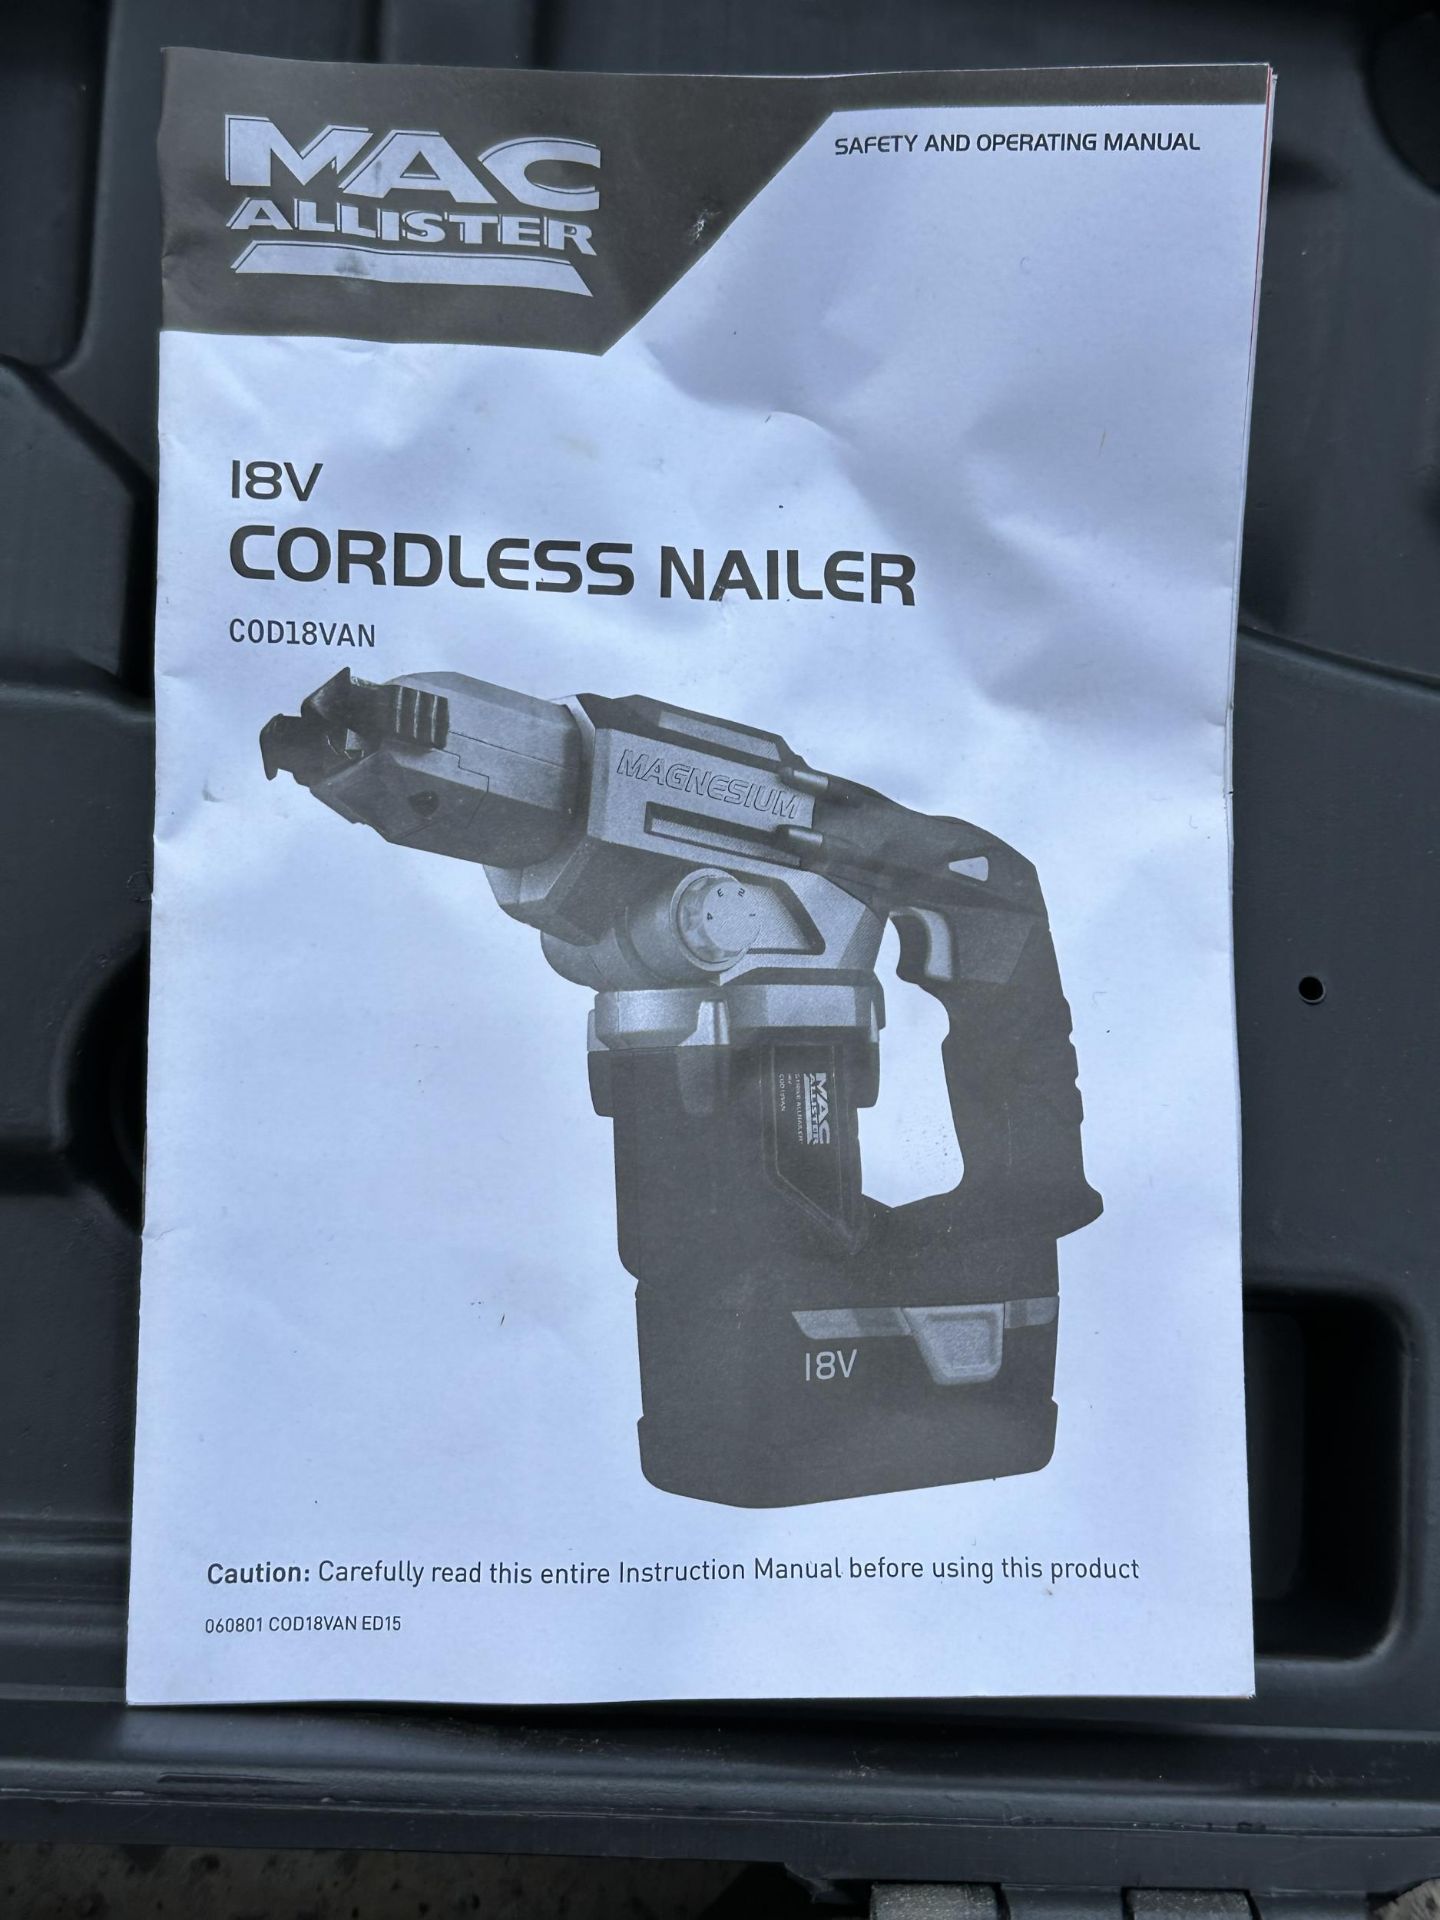 A BOXED MACALLISTER CORDLESS NAIL GUN NO VAT - Image 4 of 4